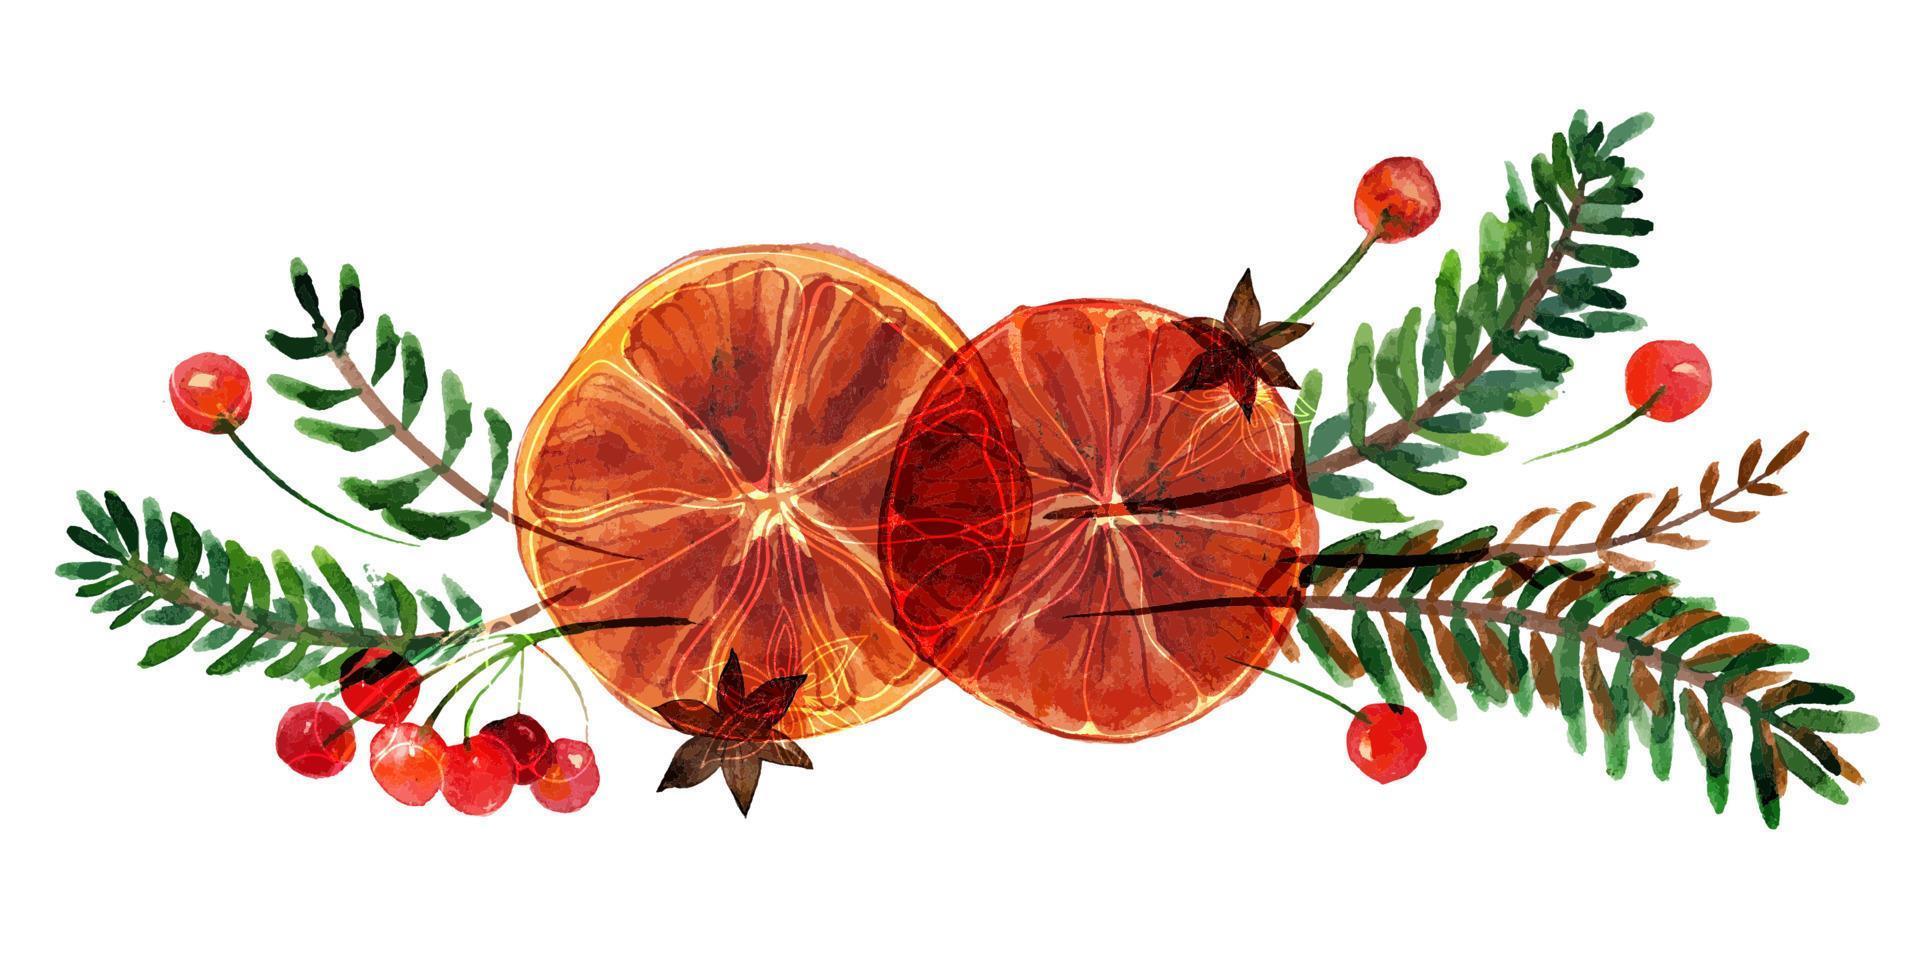 Natale acquerello composizione con abete e arance vettore